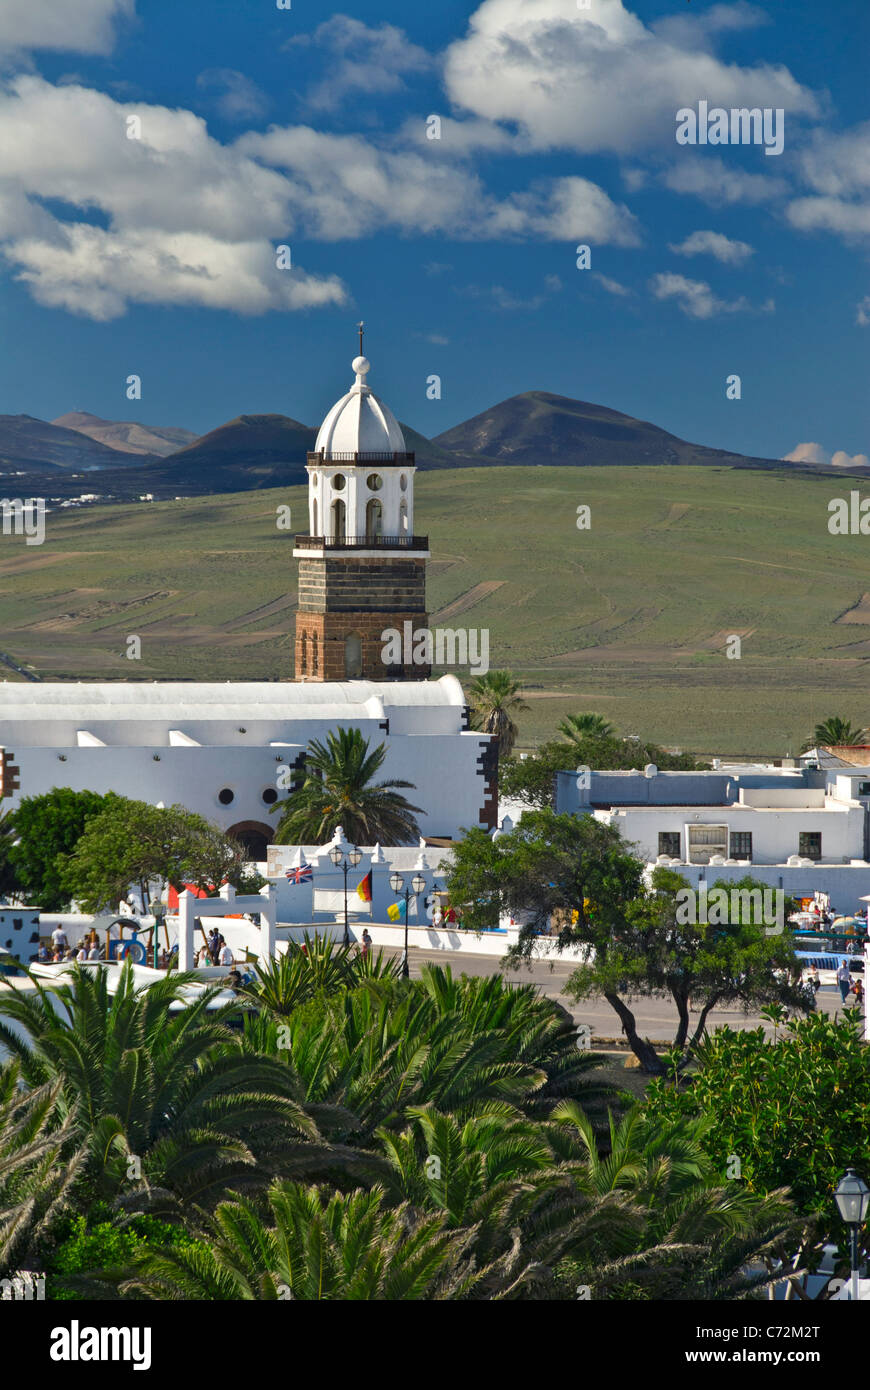 Vieille ville de Teguise Lanzarote avec l'église de Nuestra Señora de Guadalupe, Lanzarote Iles Canaries Espagne Banque D'Images